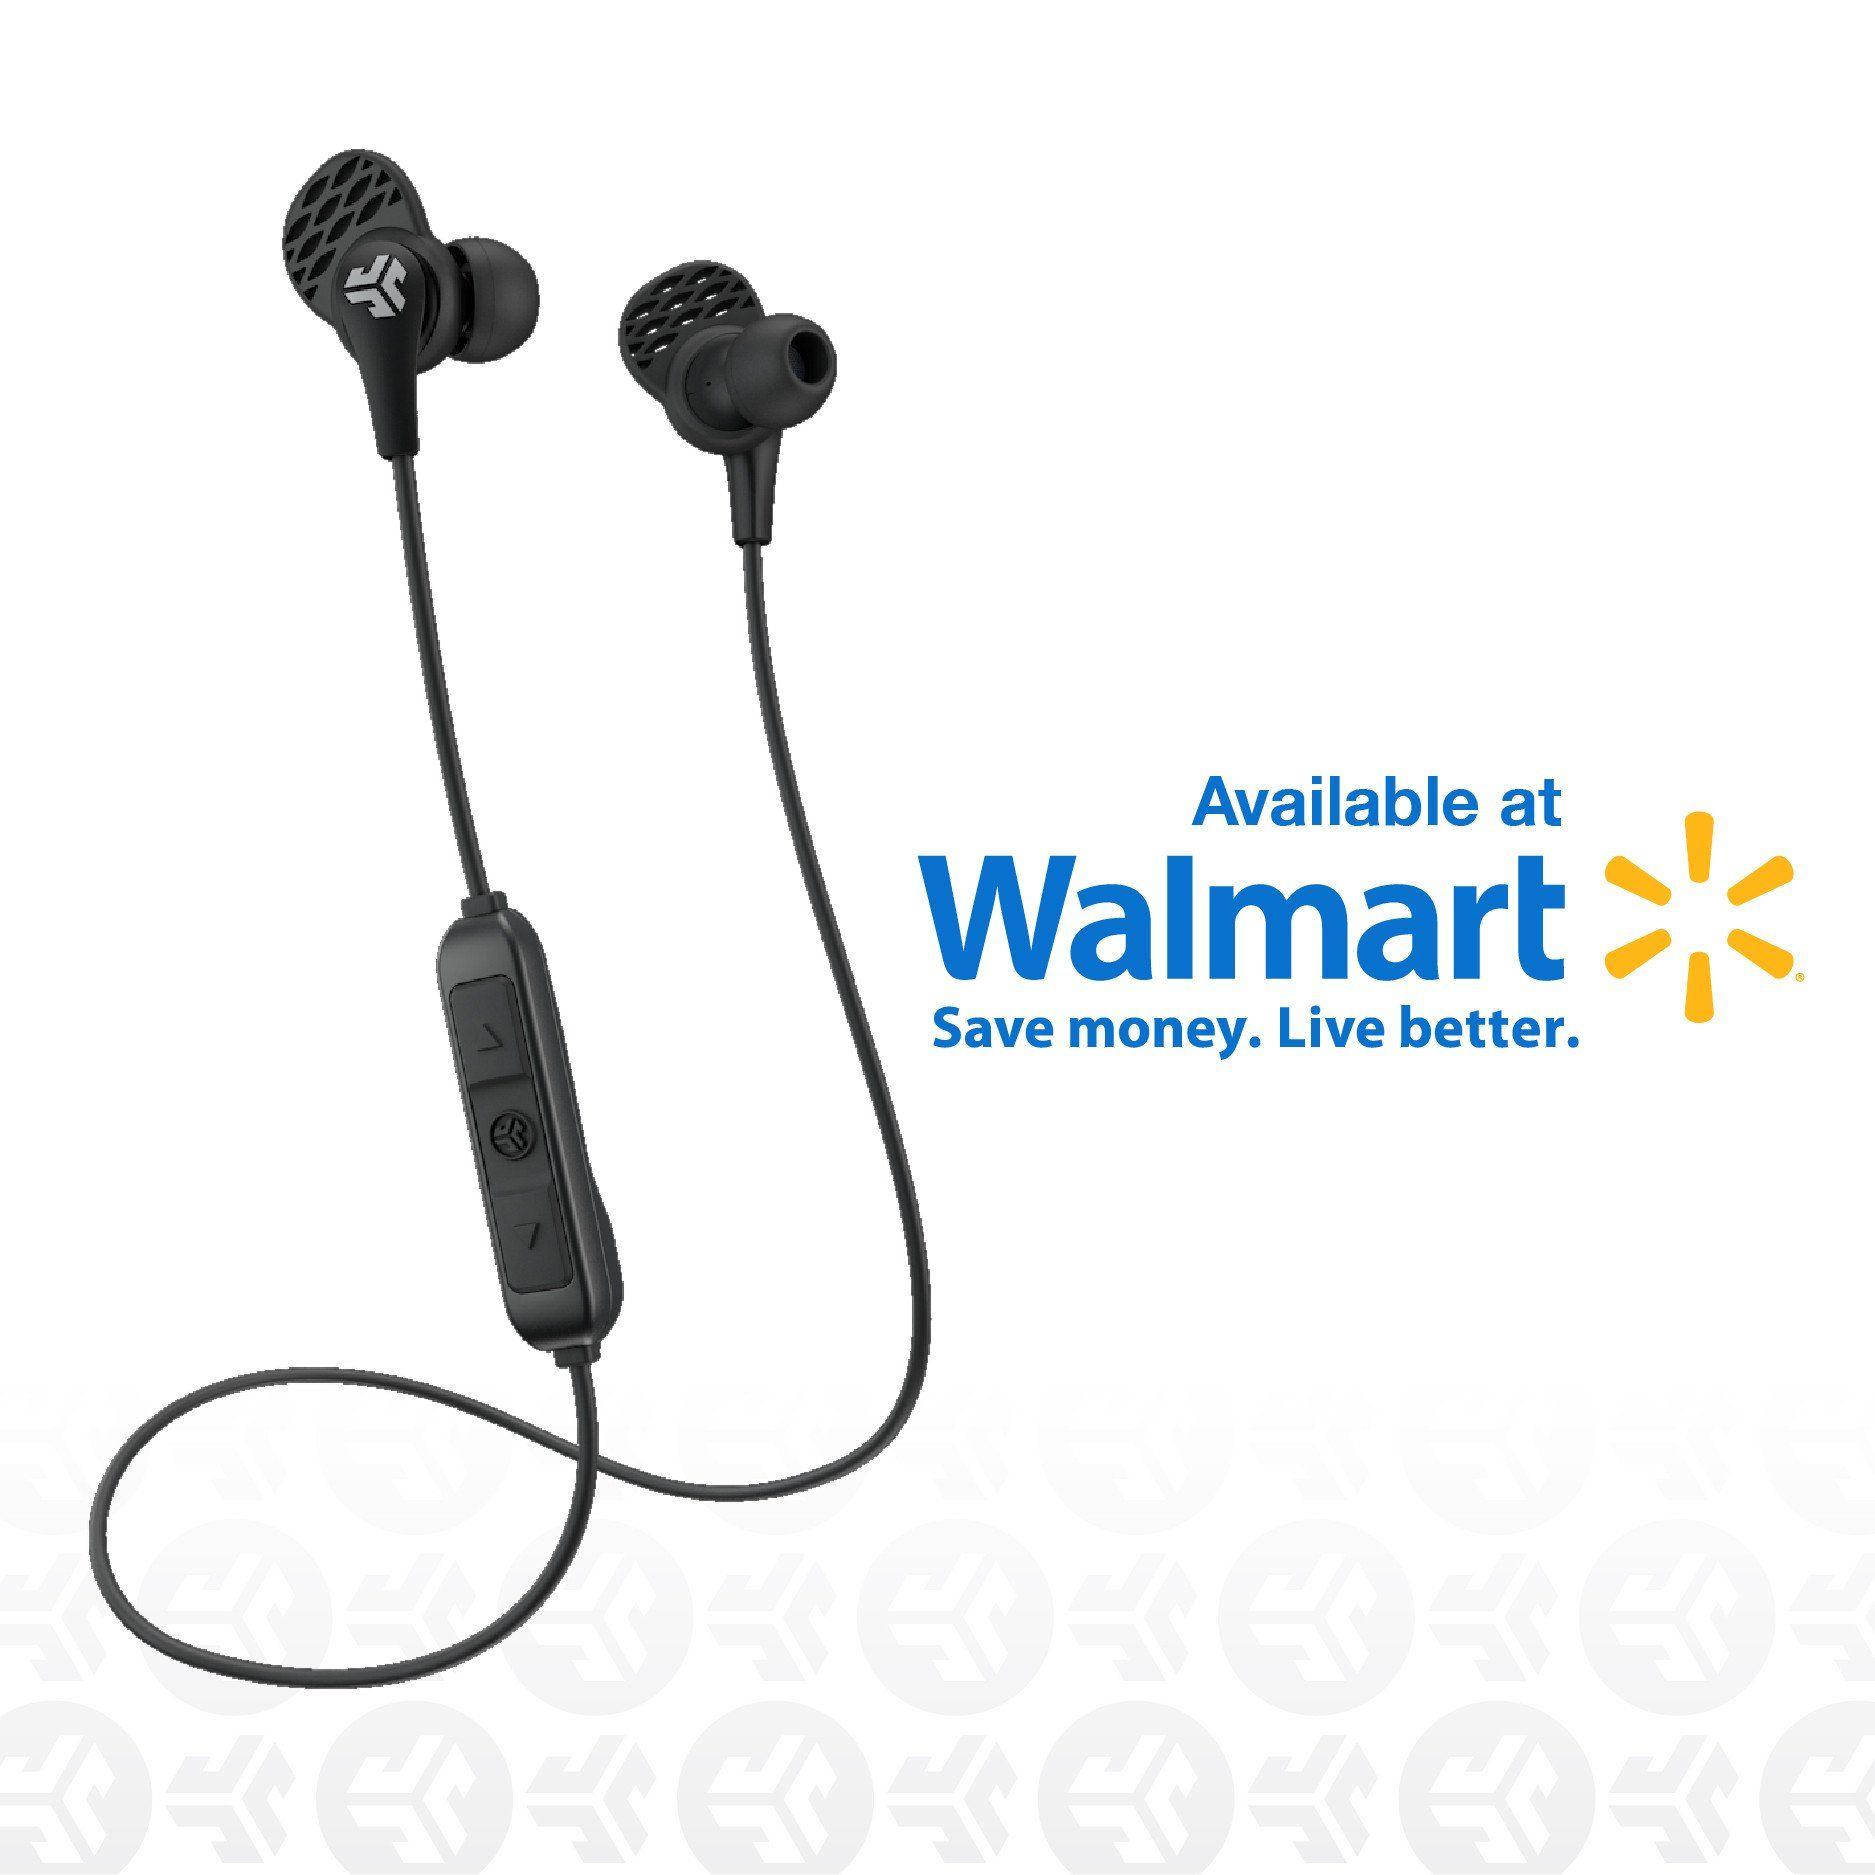 Available at Walmart Logo - Available at Walmart - JLab Audio